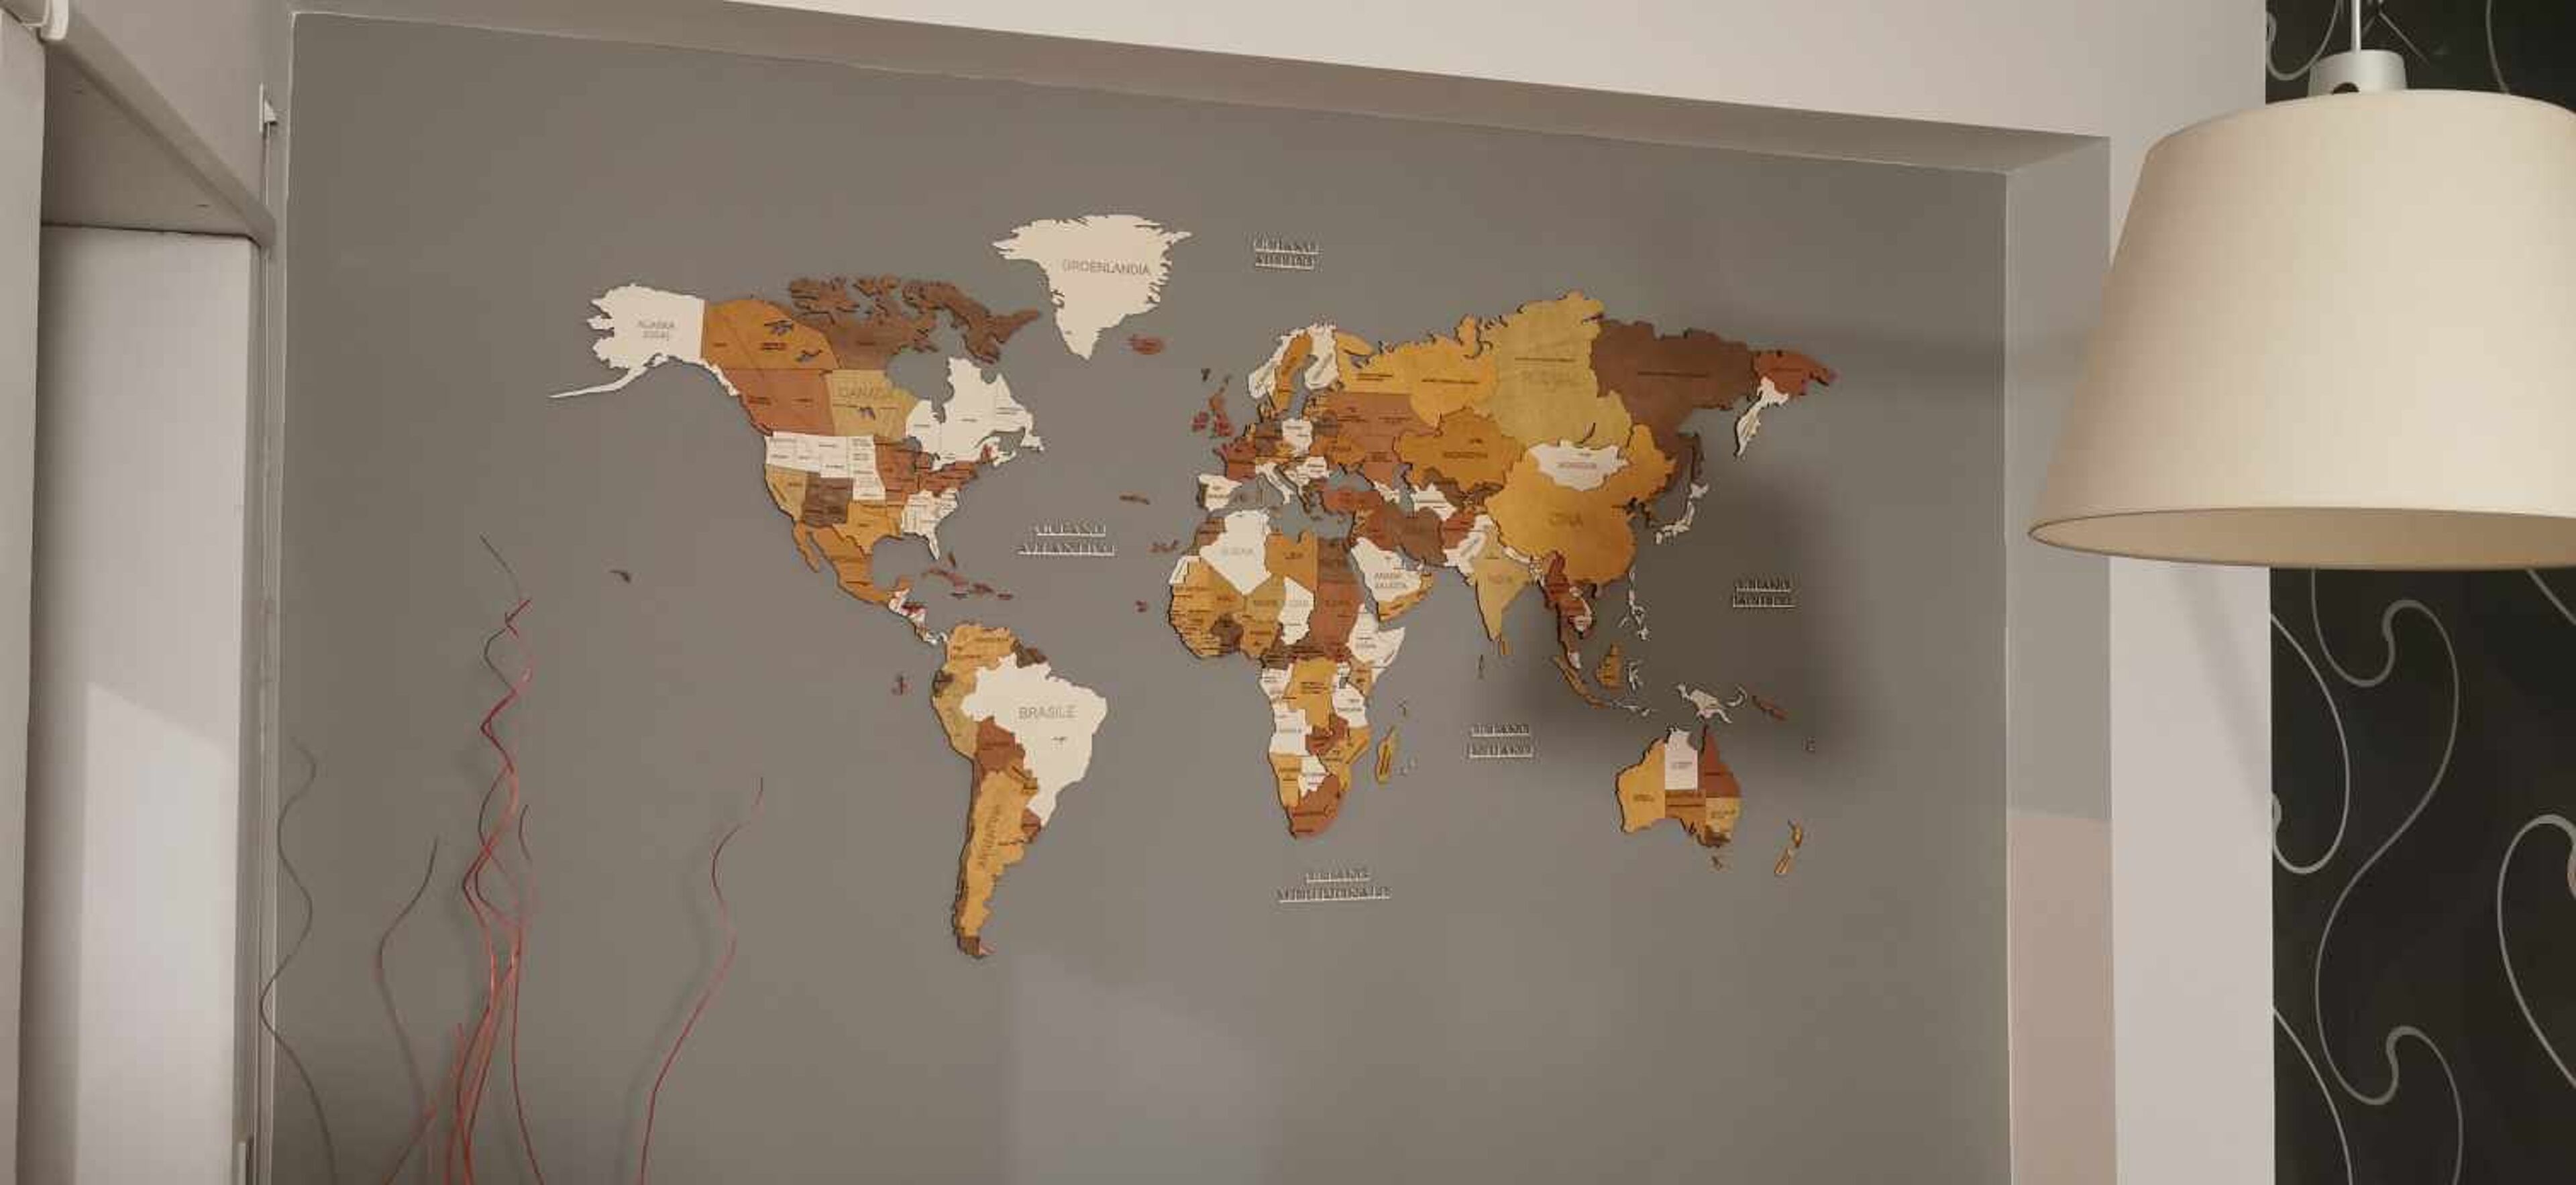 Recensione per Mappa del Mondo in legno - immagine da Fabio Bartuccio